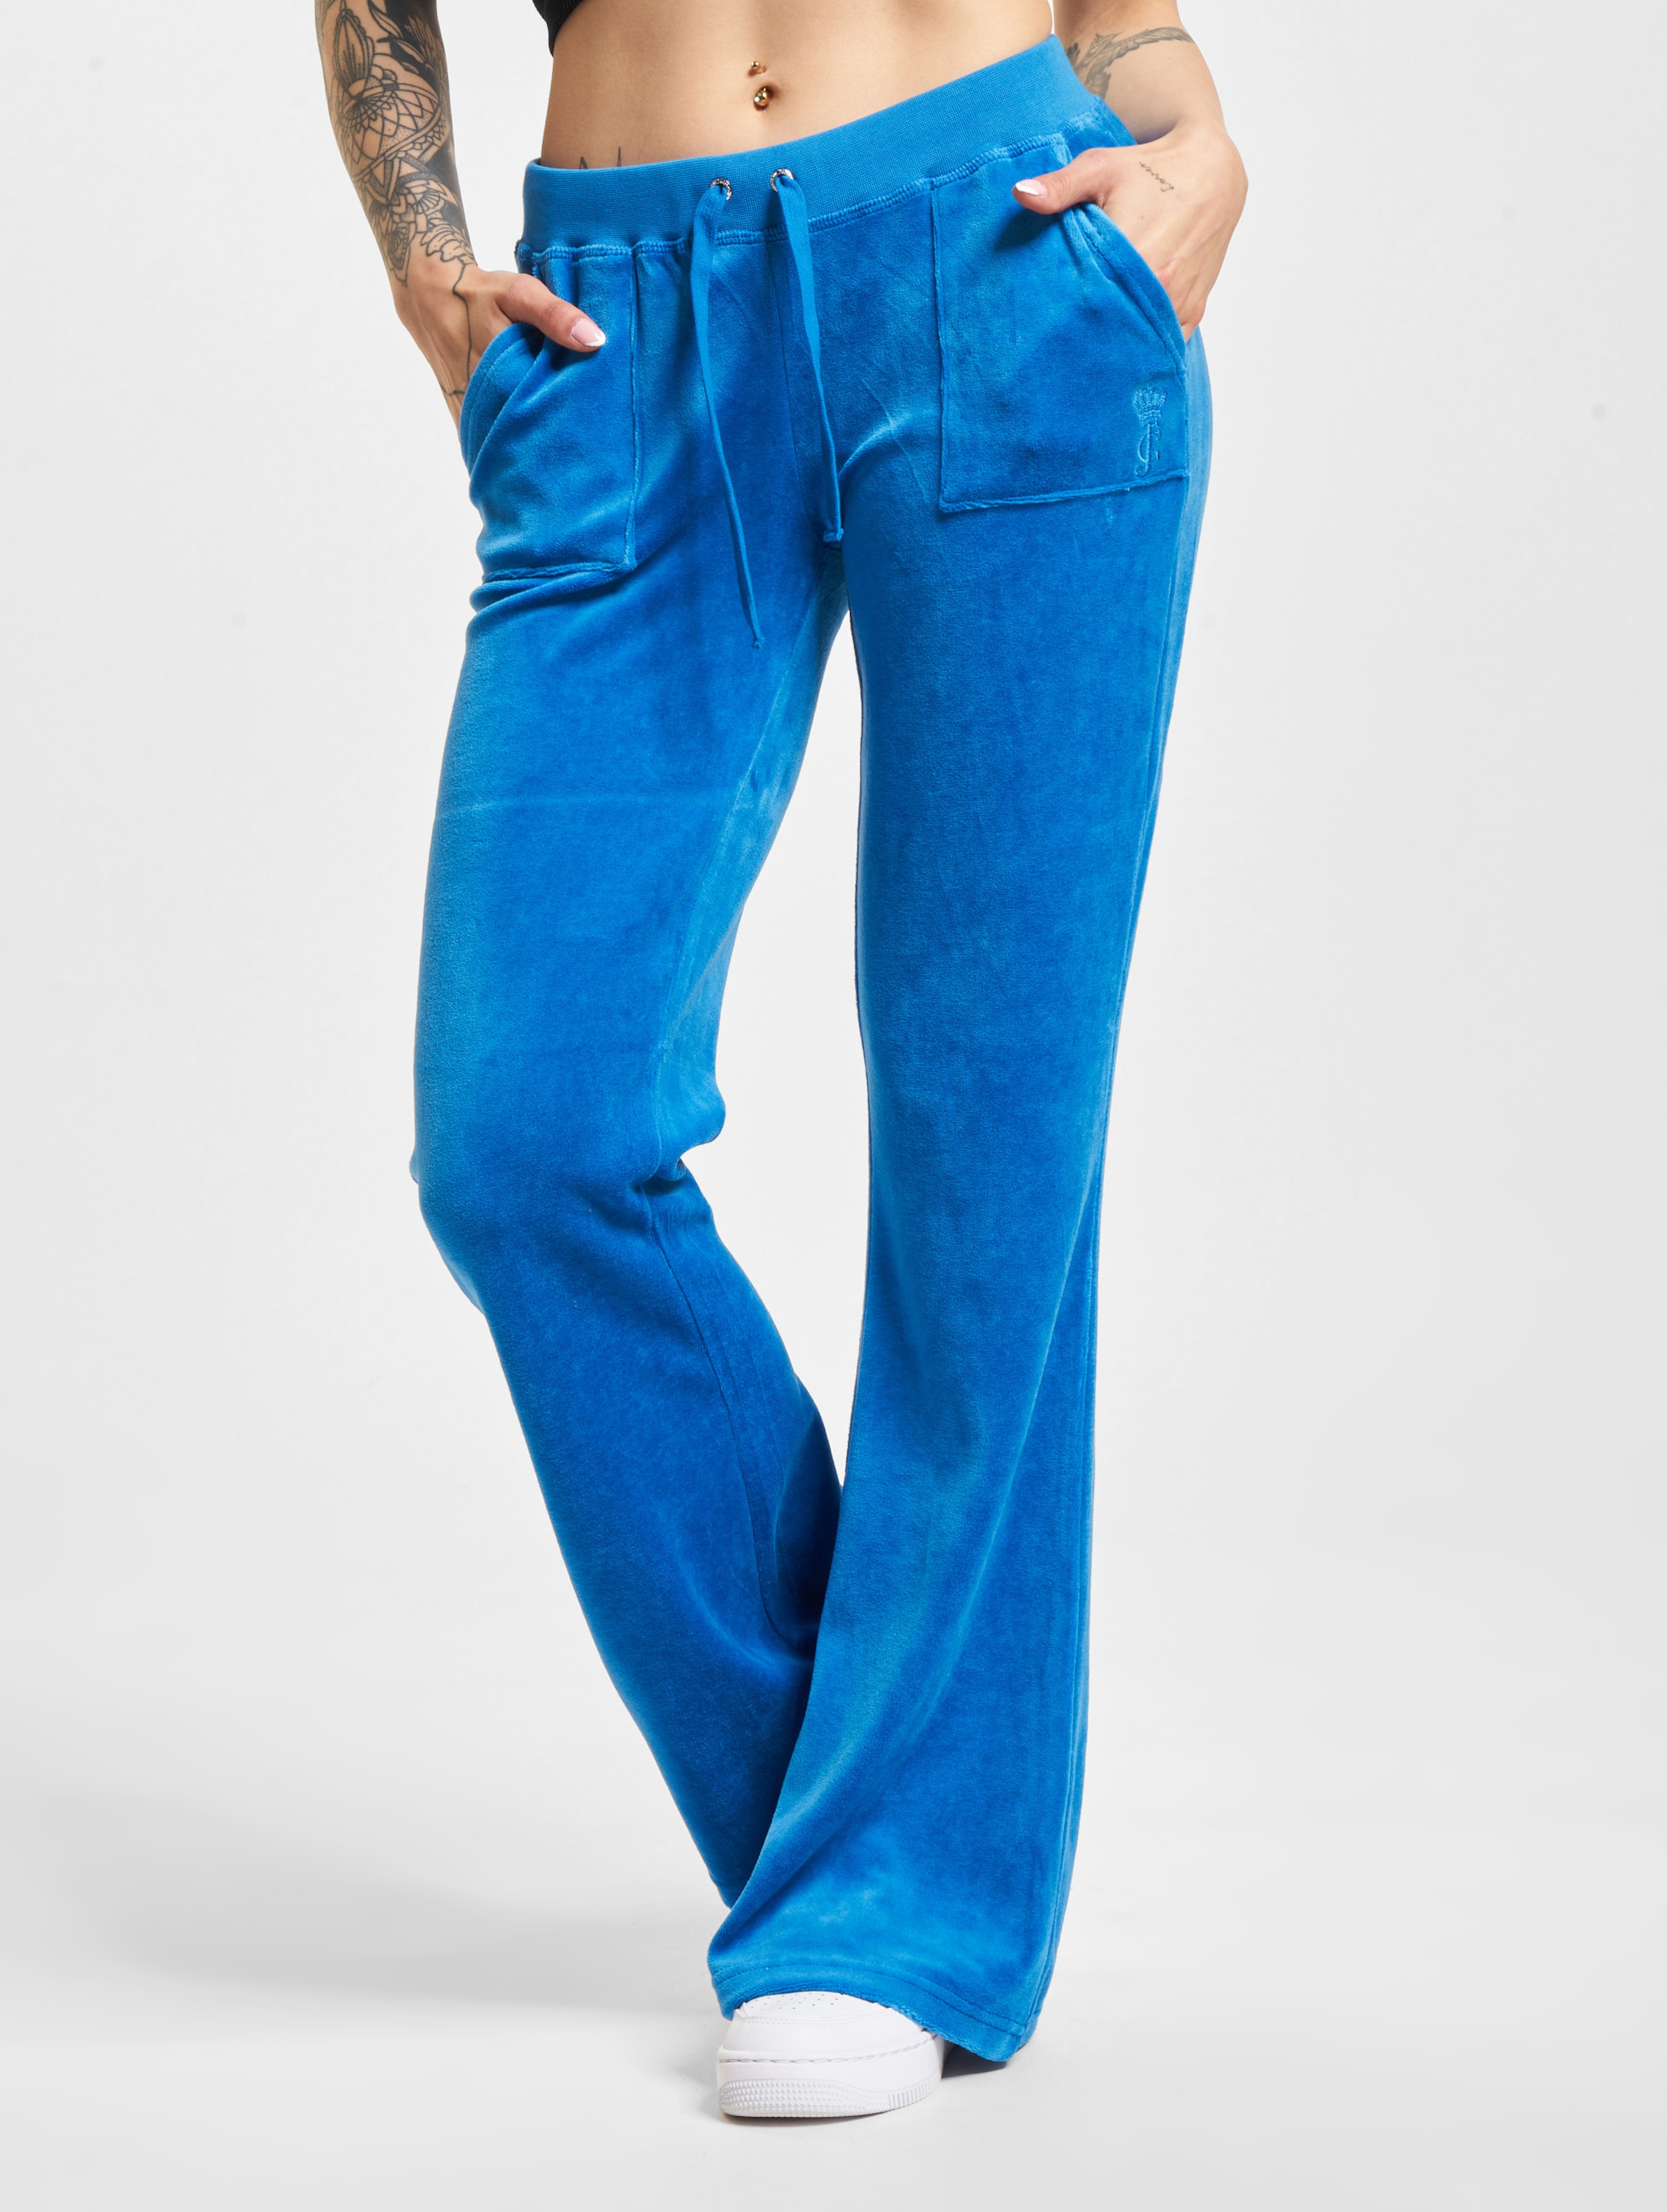 Juicy Couture Caisa Jogginghosen Frauen,Unisex op kleur blauw, Maat XL